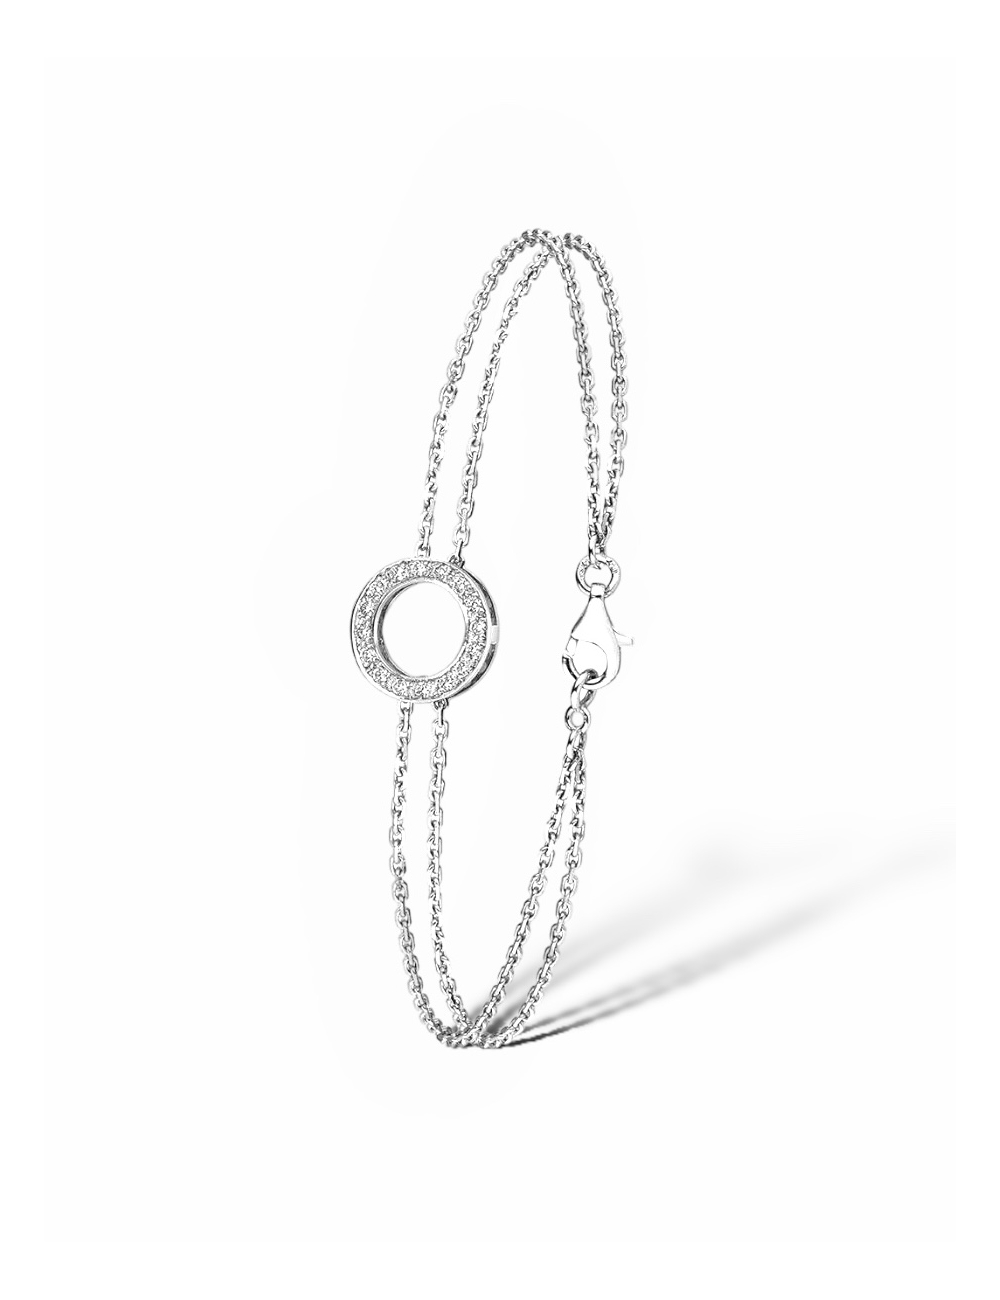 Un bracelet pour femme en forme de cercle, fabriqué en or blanc 750 et orné de diamants blancs.